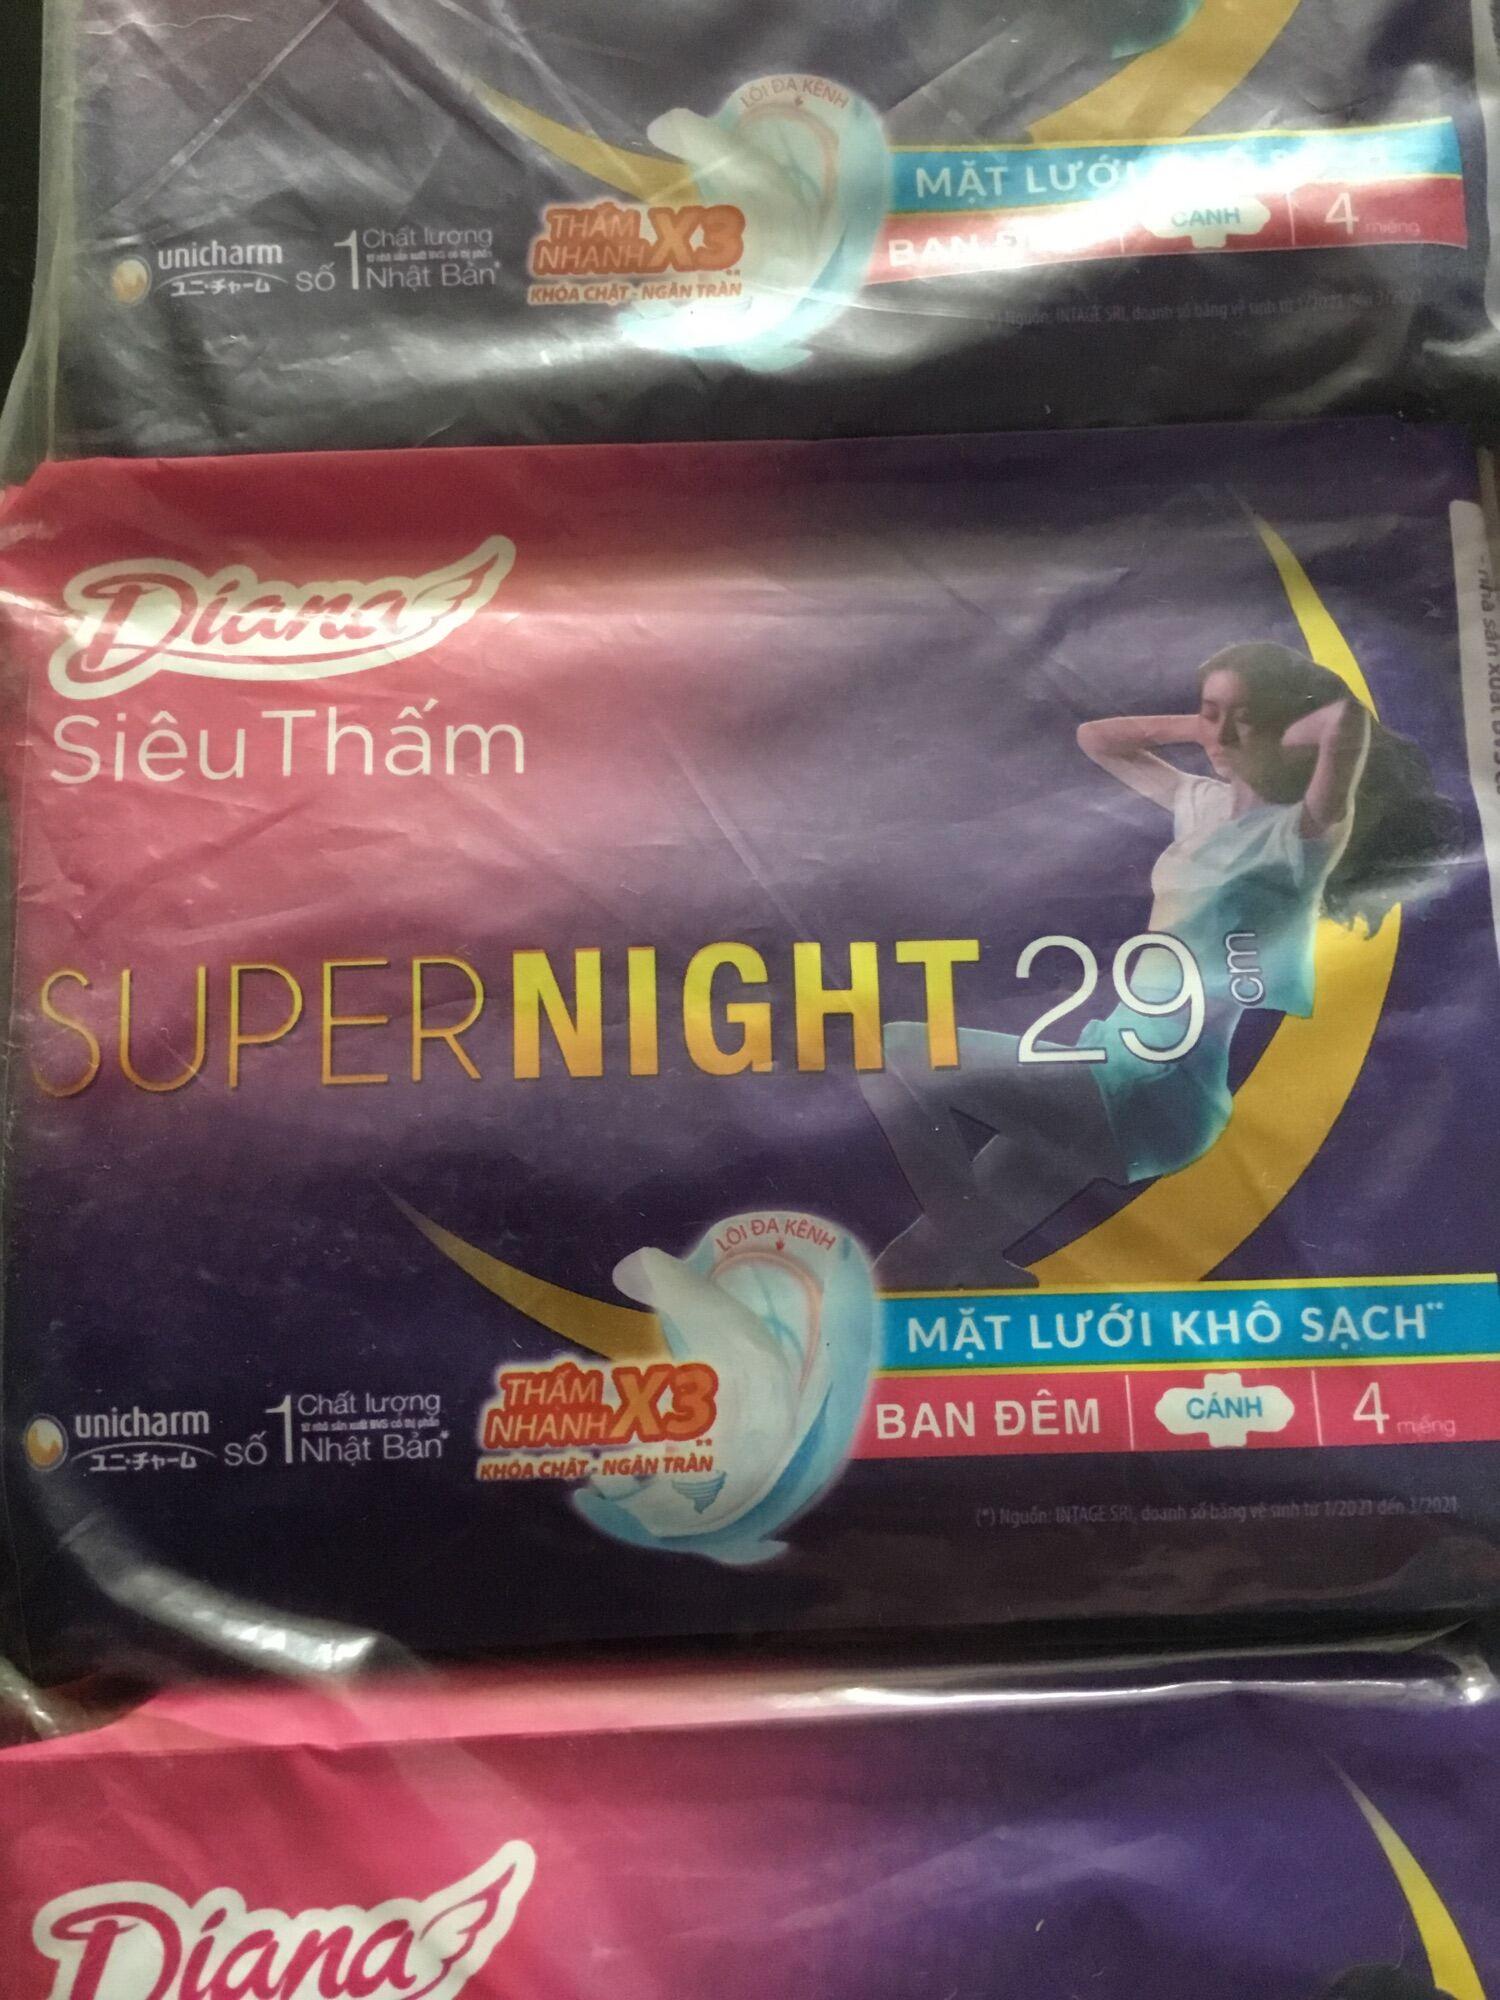 1 Gói Băng Vệ Sinh Diana Supernight 29cm ban đêm 4 miếng- Date luôn mới